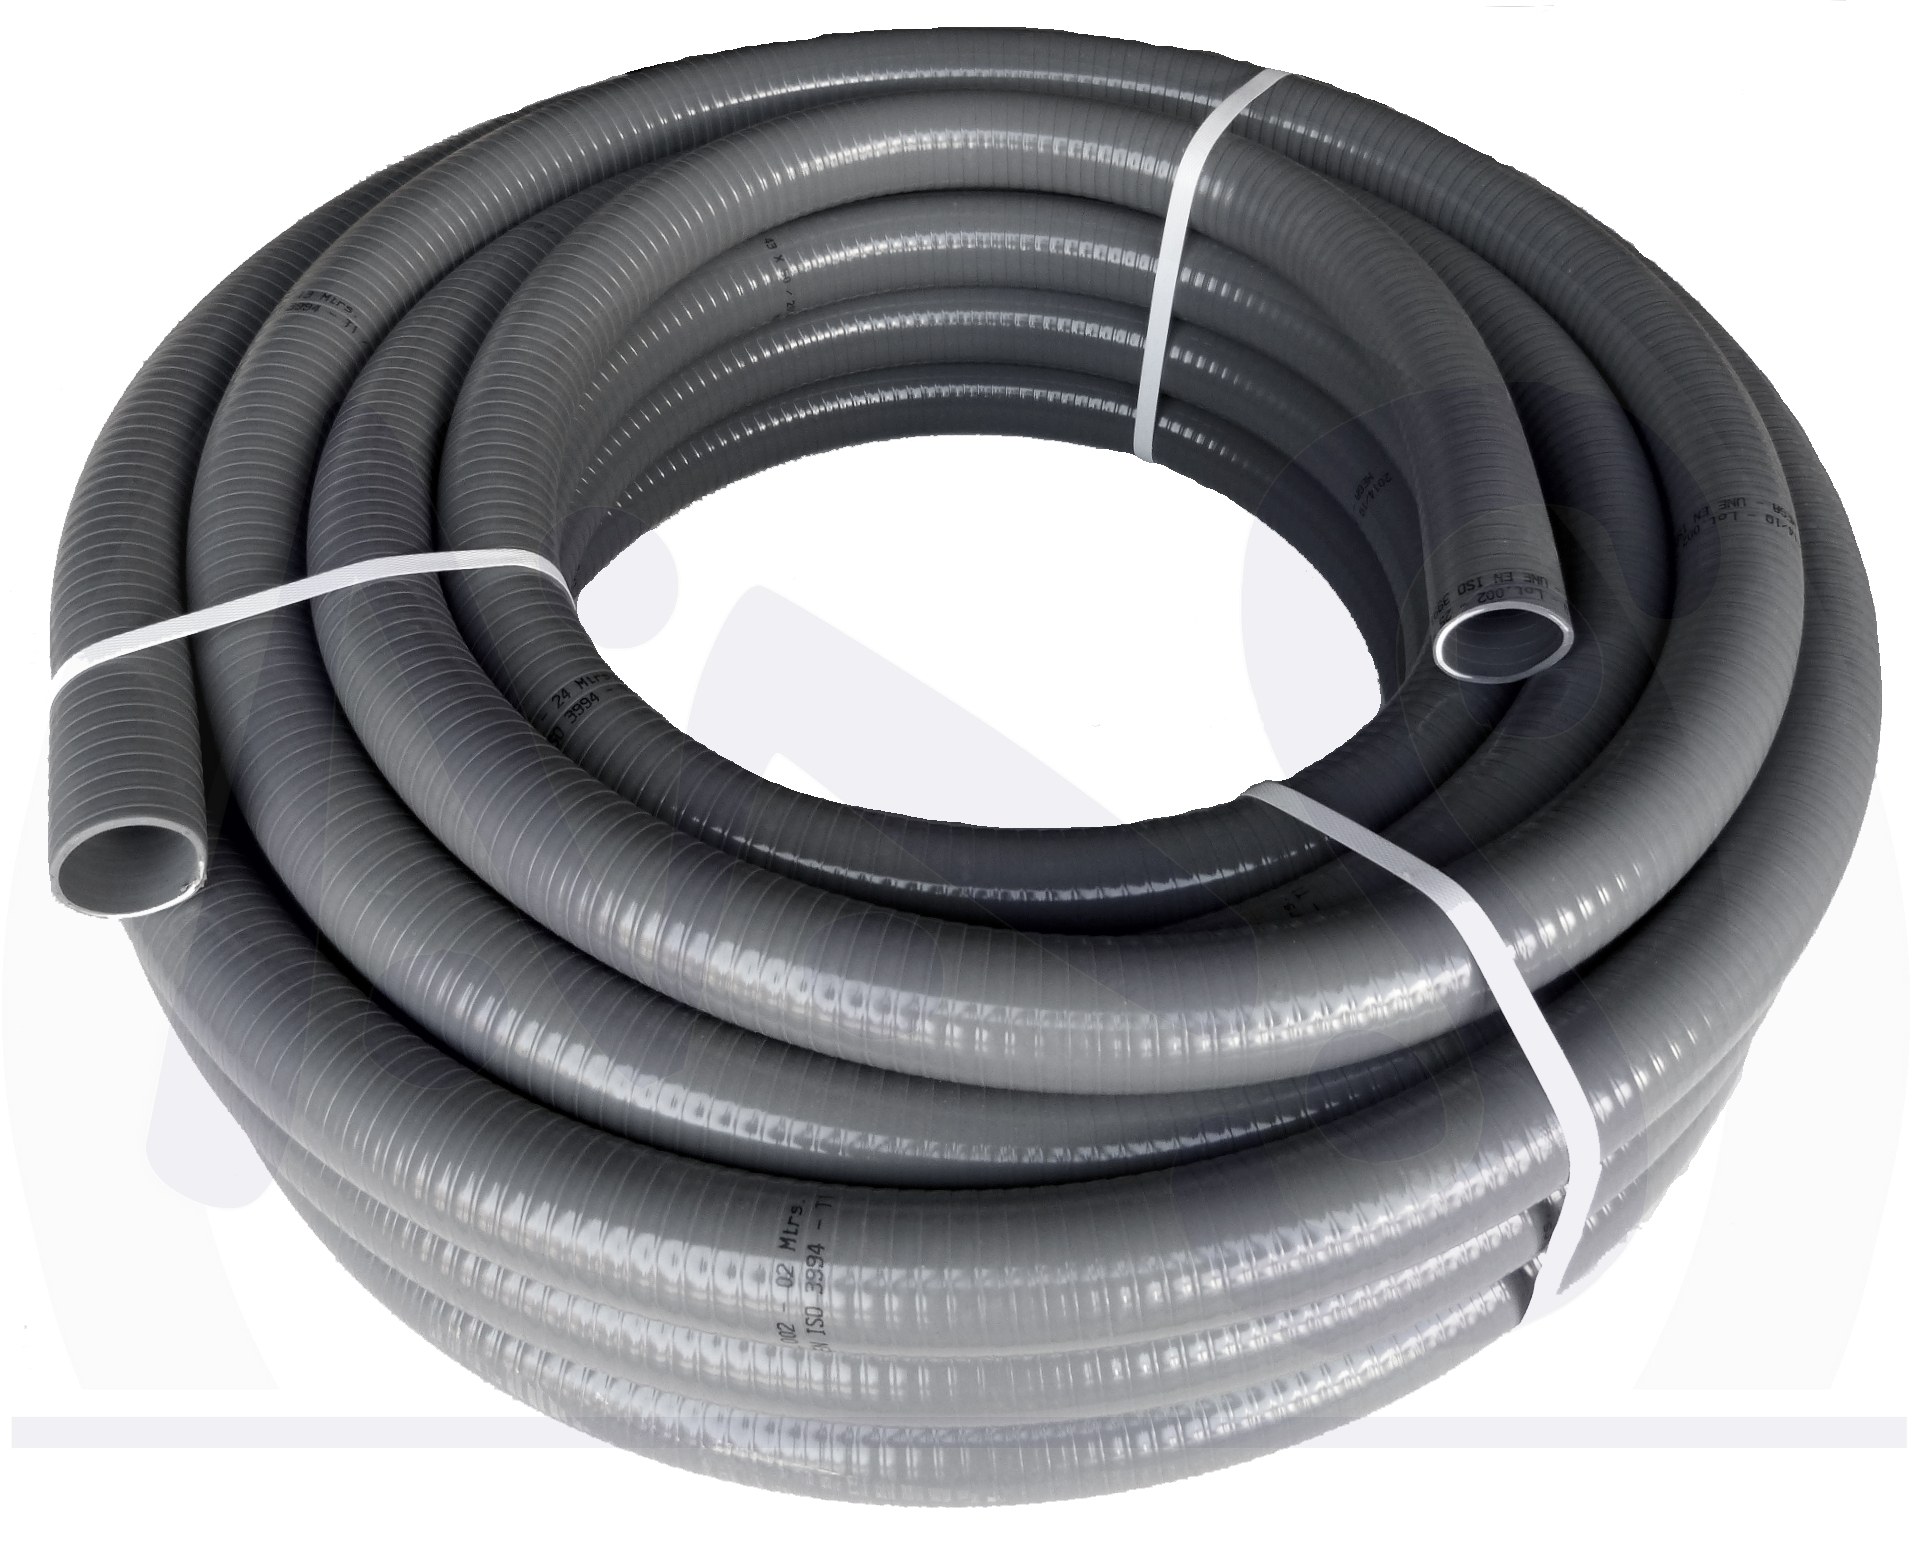 Flexibler PVC-Schlauch d = 50 mm à lfm, Flexfit-Verbinder, Installationsbedarf